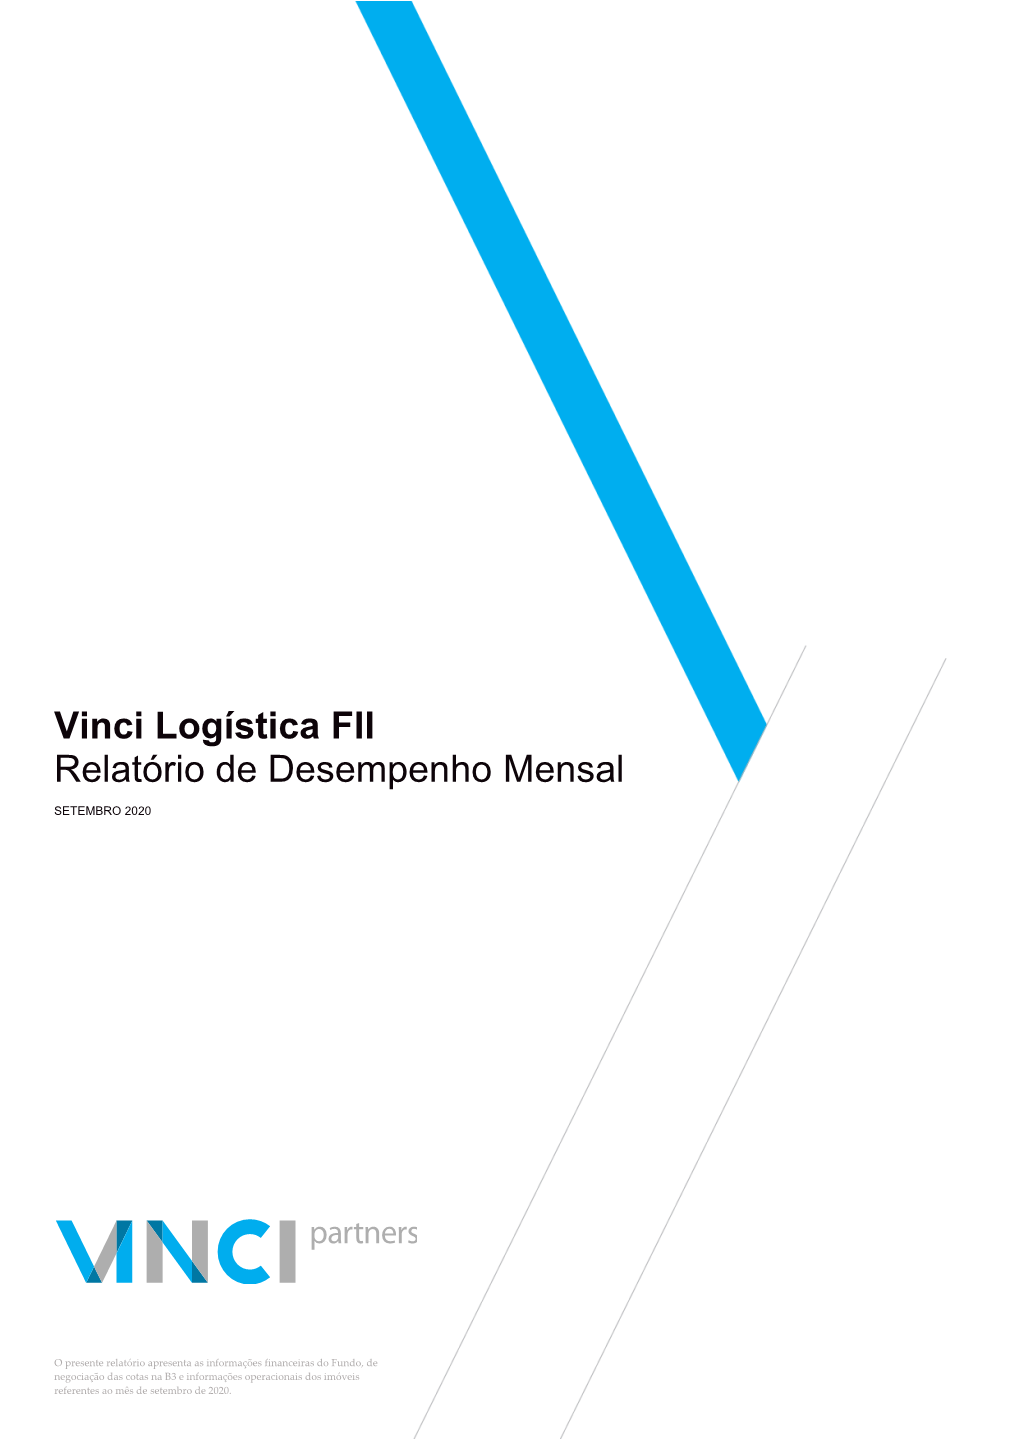 Vinci Logística FII Relatório De Desempenho Mensal